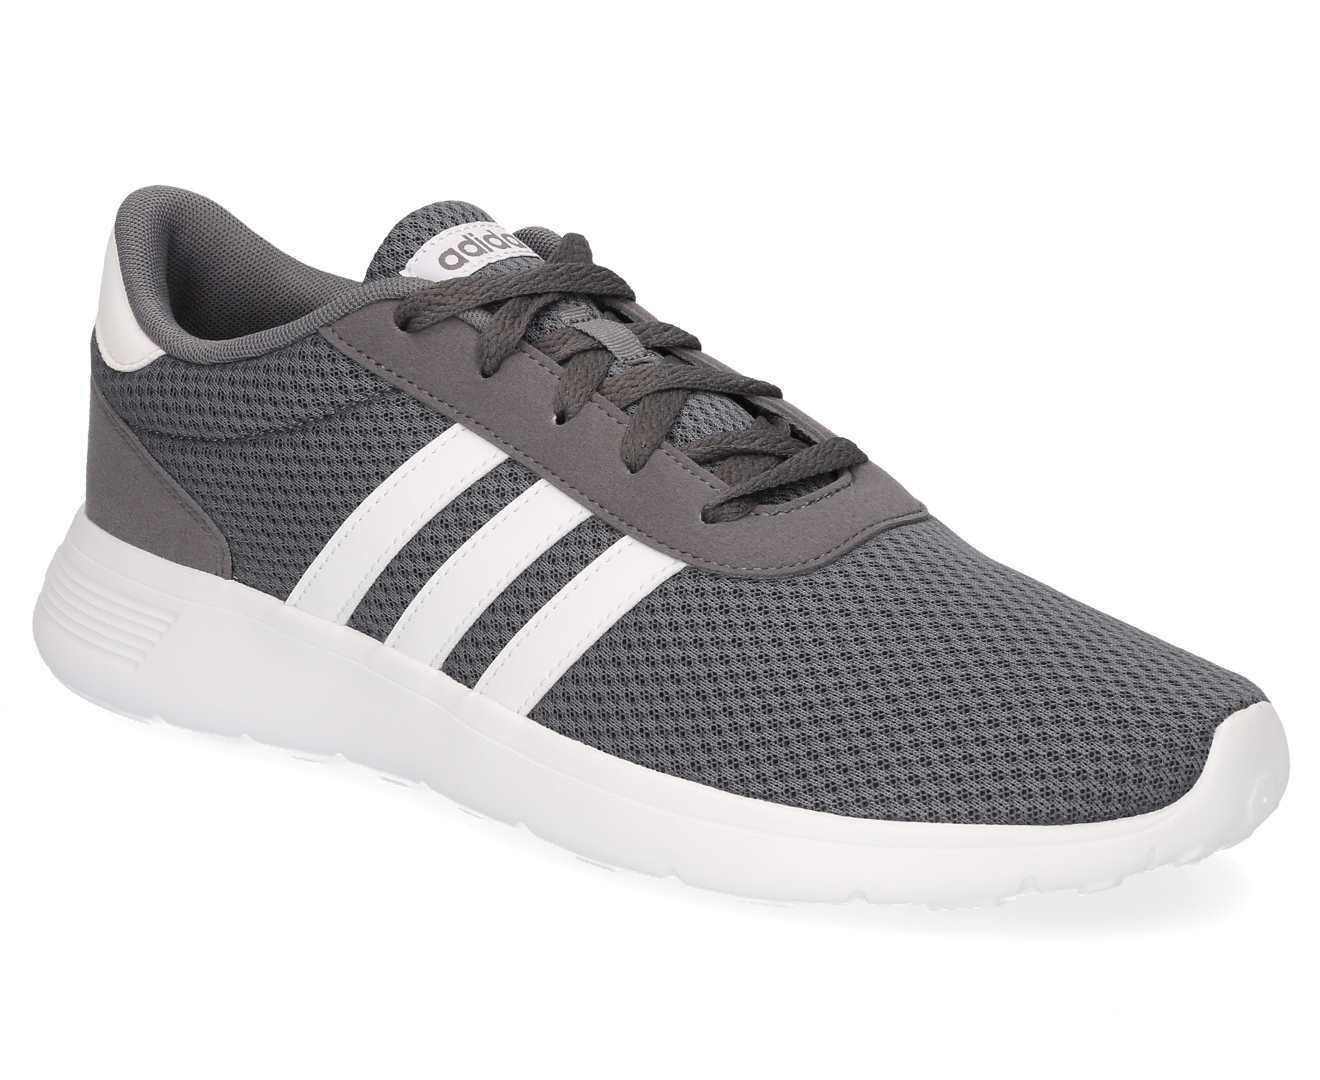 Adidas Mens Lite Racer Sneakers - Grey Four/White | Catch.com.au